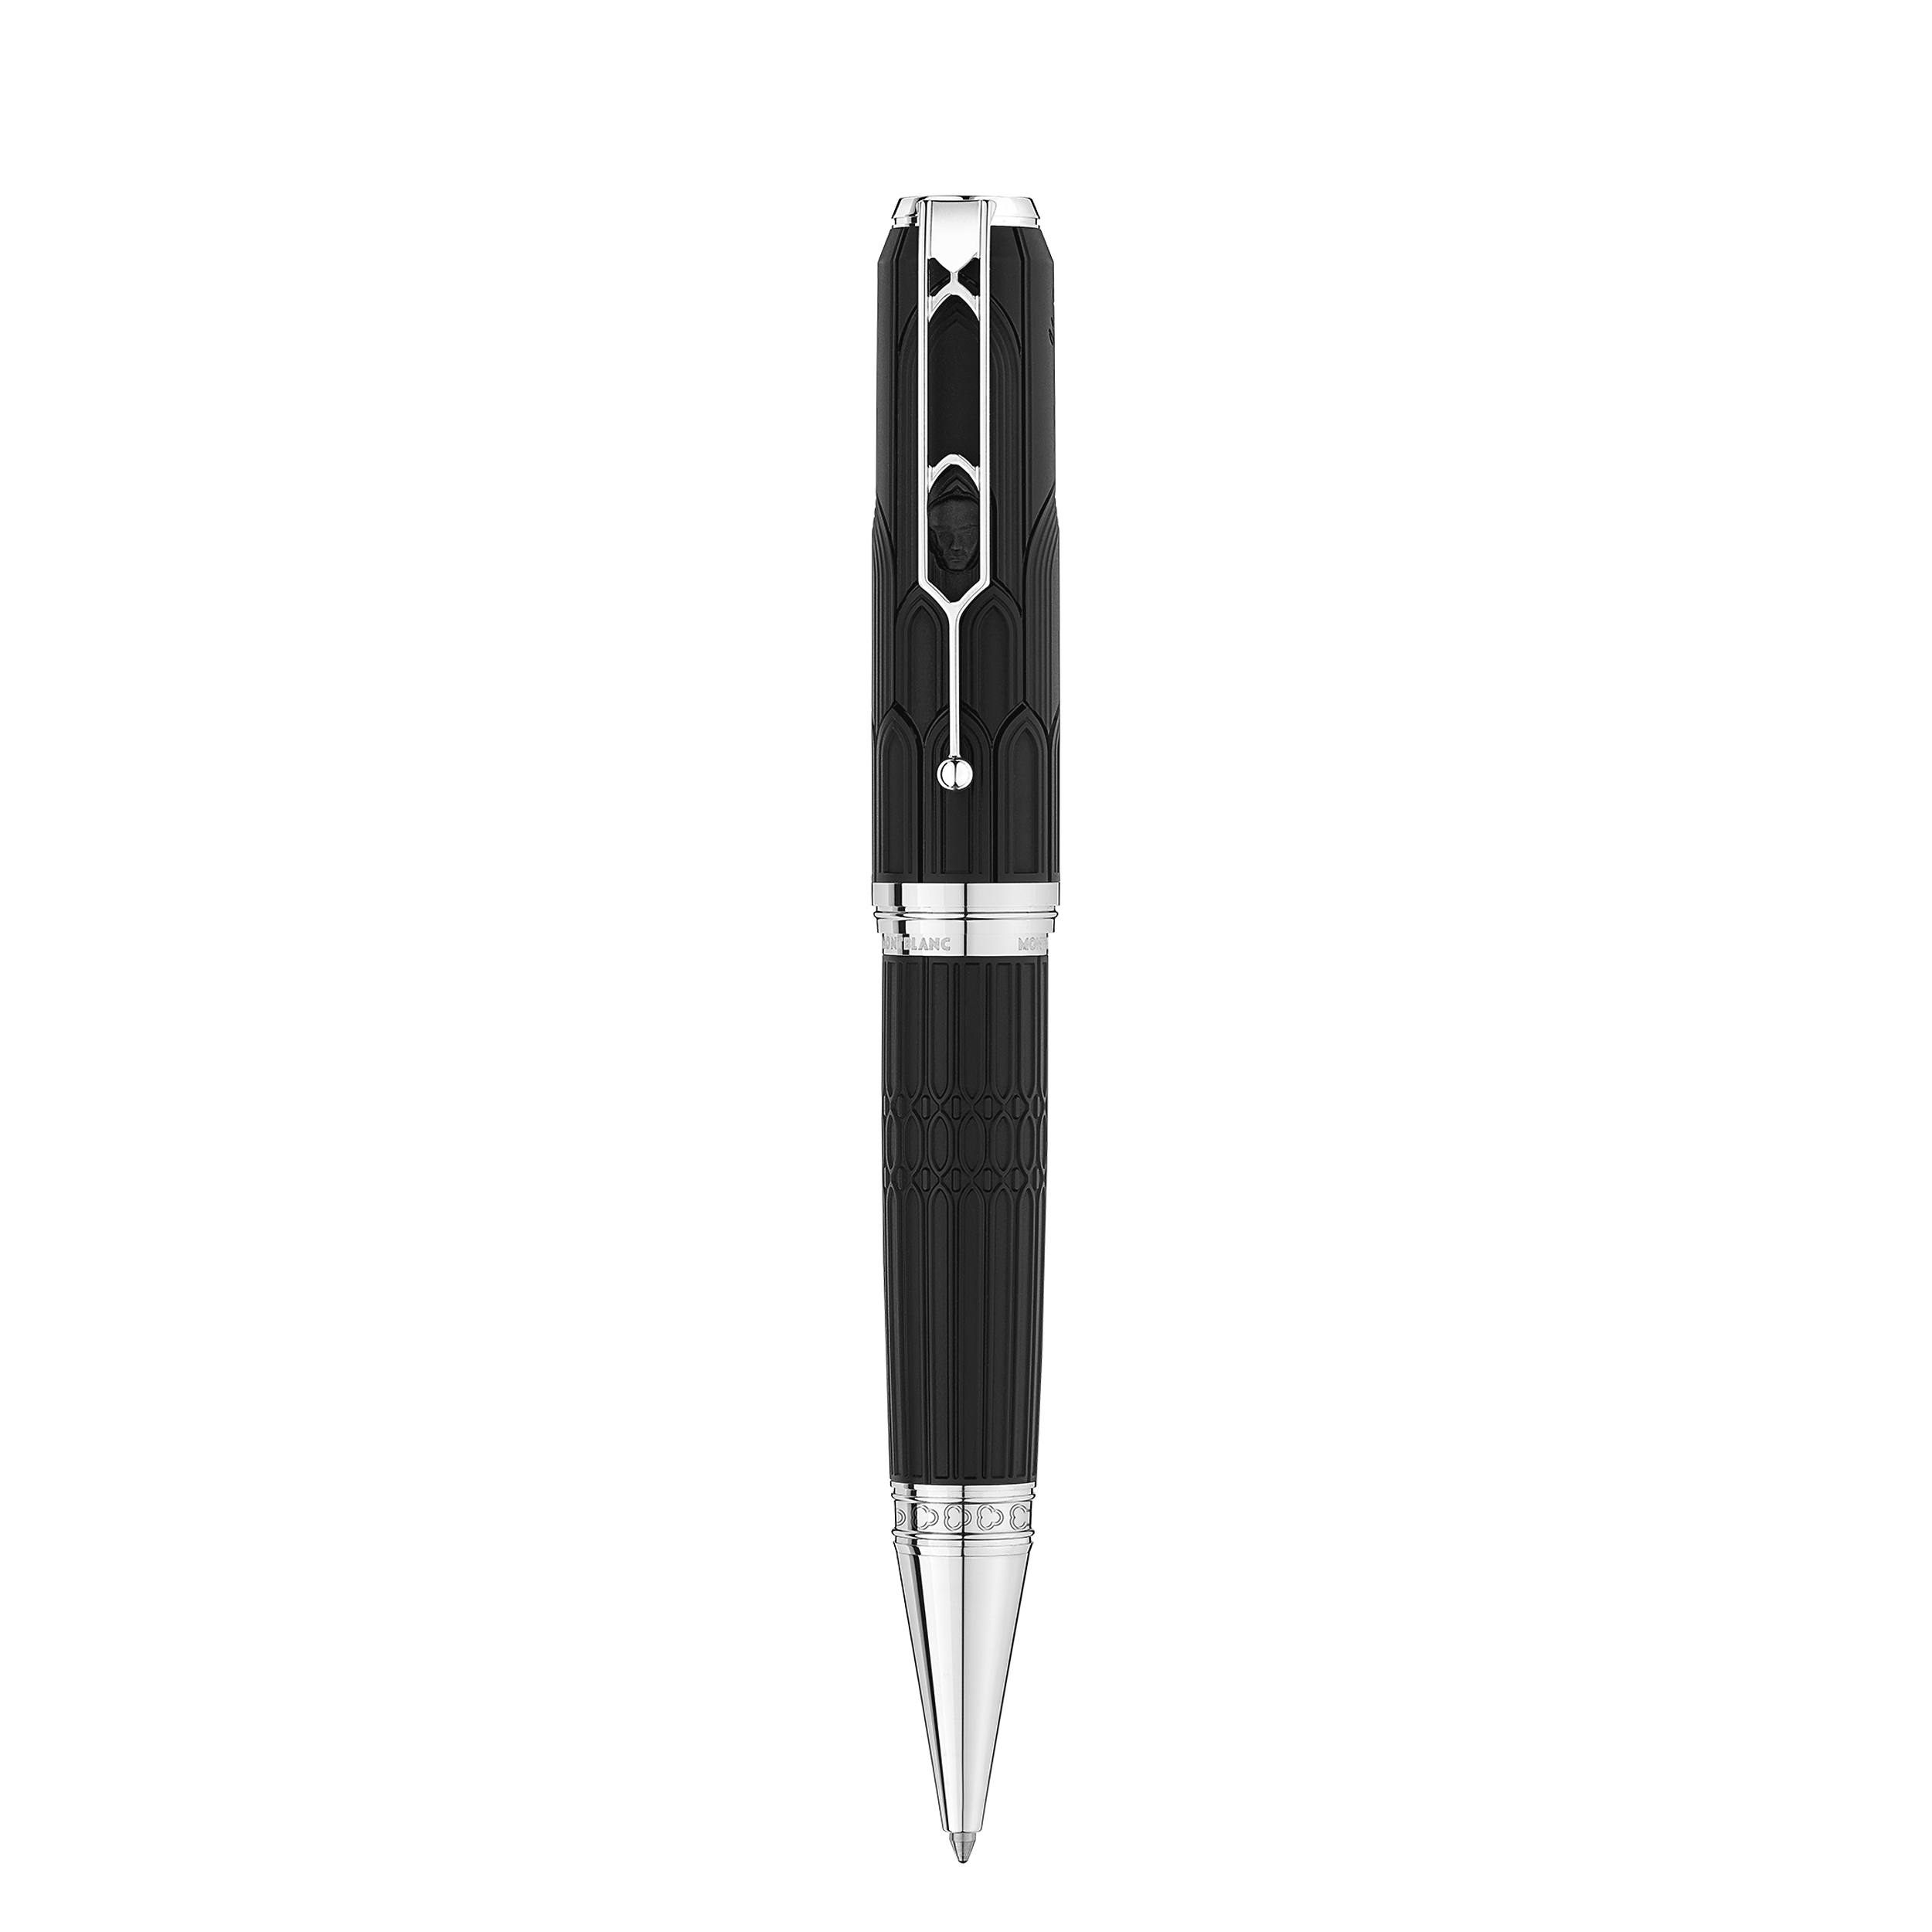 1 صورة ،قلم حبر جاف من الإصدارات الخاصة بالكُتّاب إشادة بفيكتور هوغو بإصدار محدود